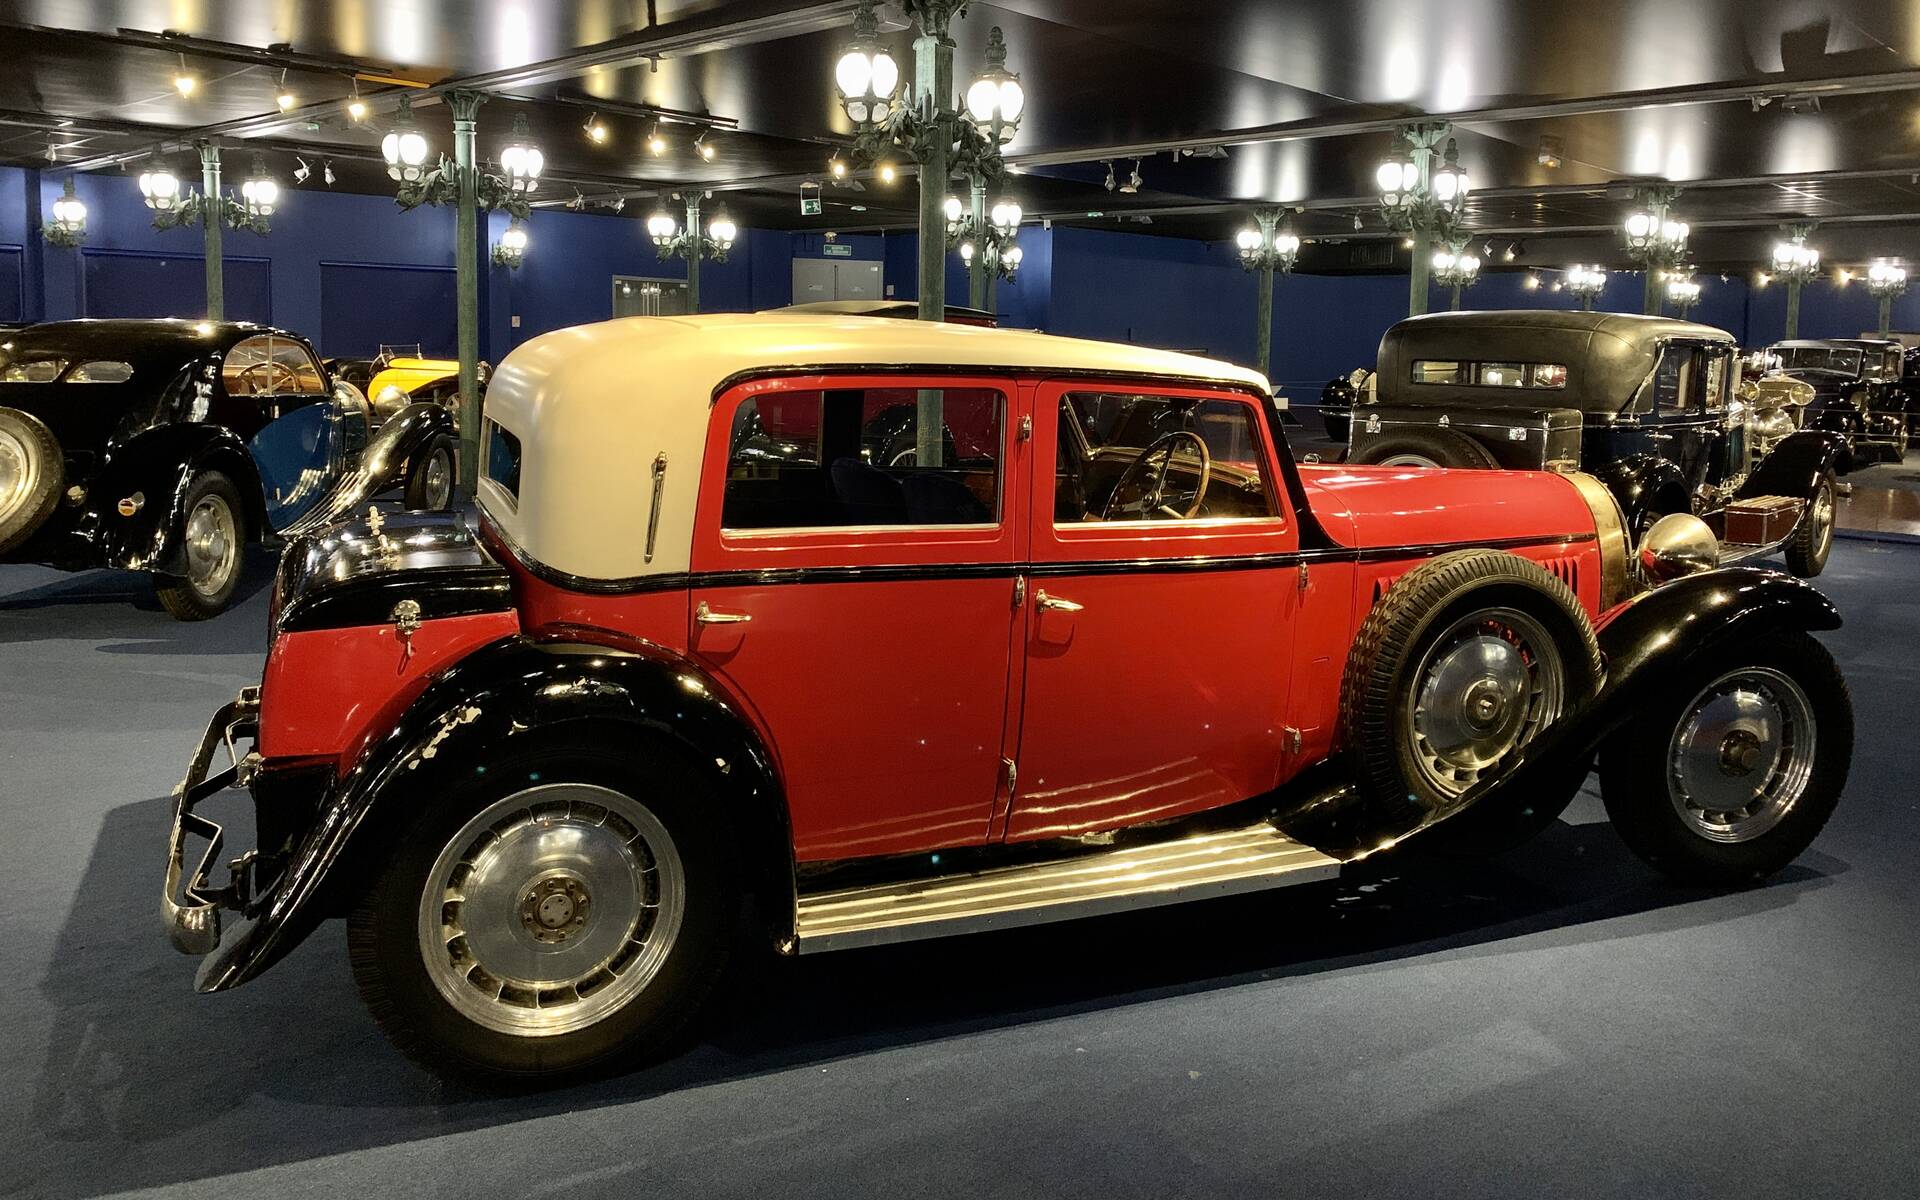 En photos : une centaine de Bugatti réunies dans un même musée 503095-en-photos-des-dizaines-de-bugatti-reunies-dans-un-meme-musee